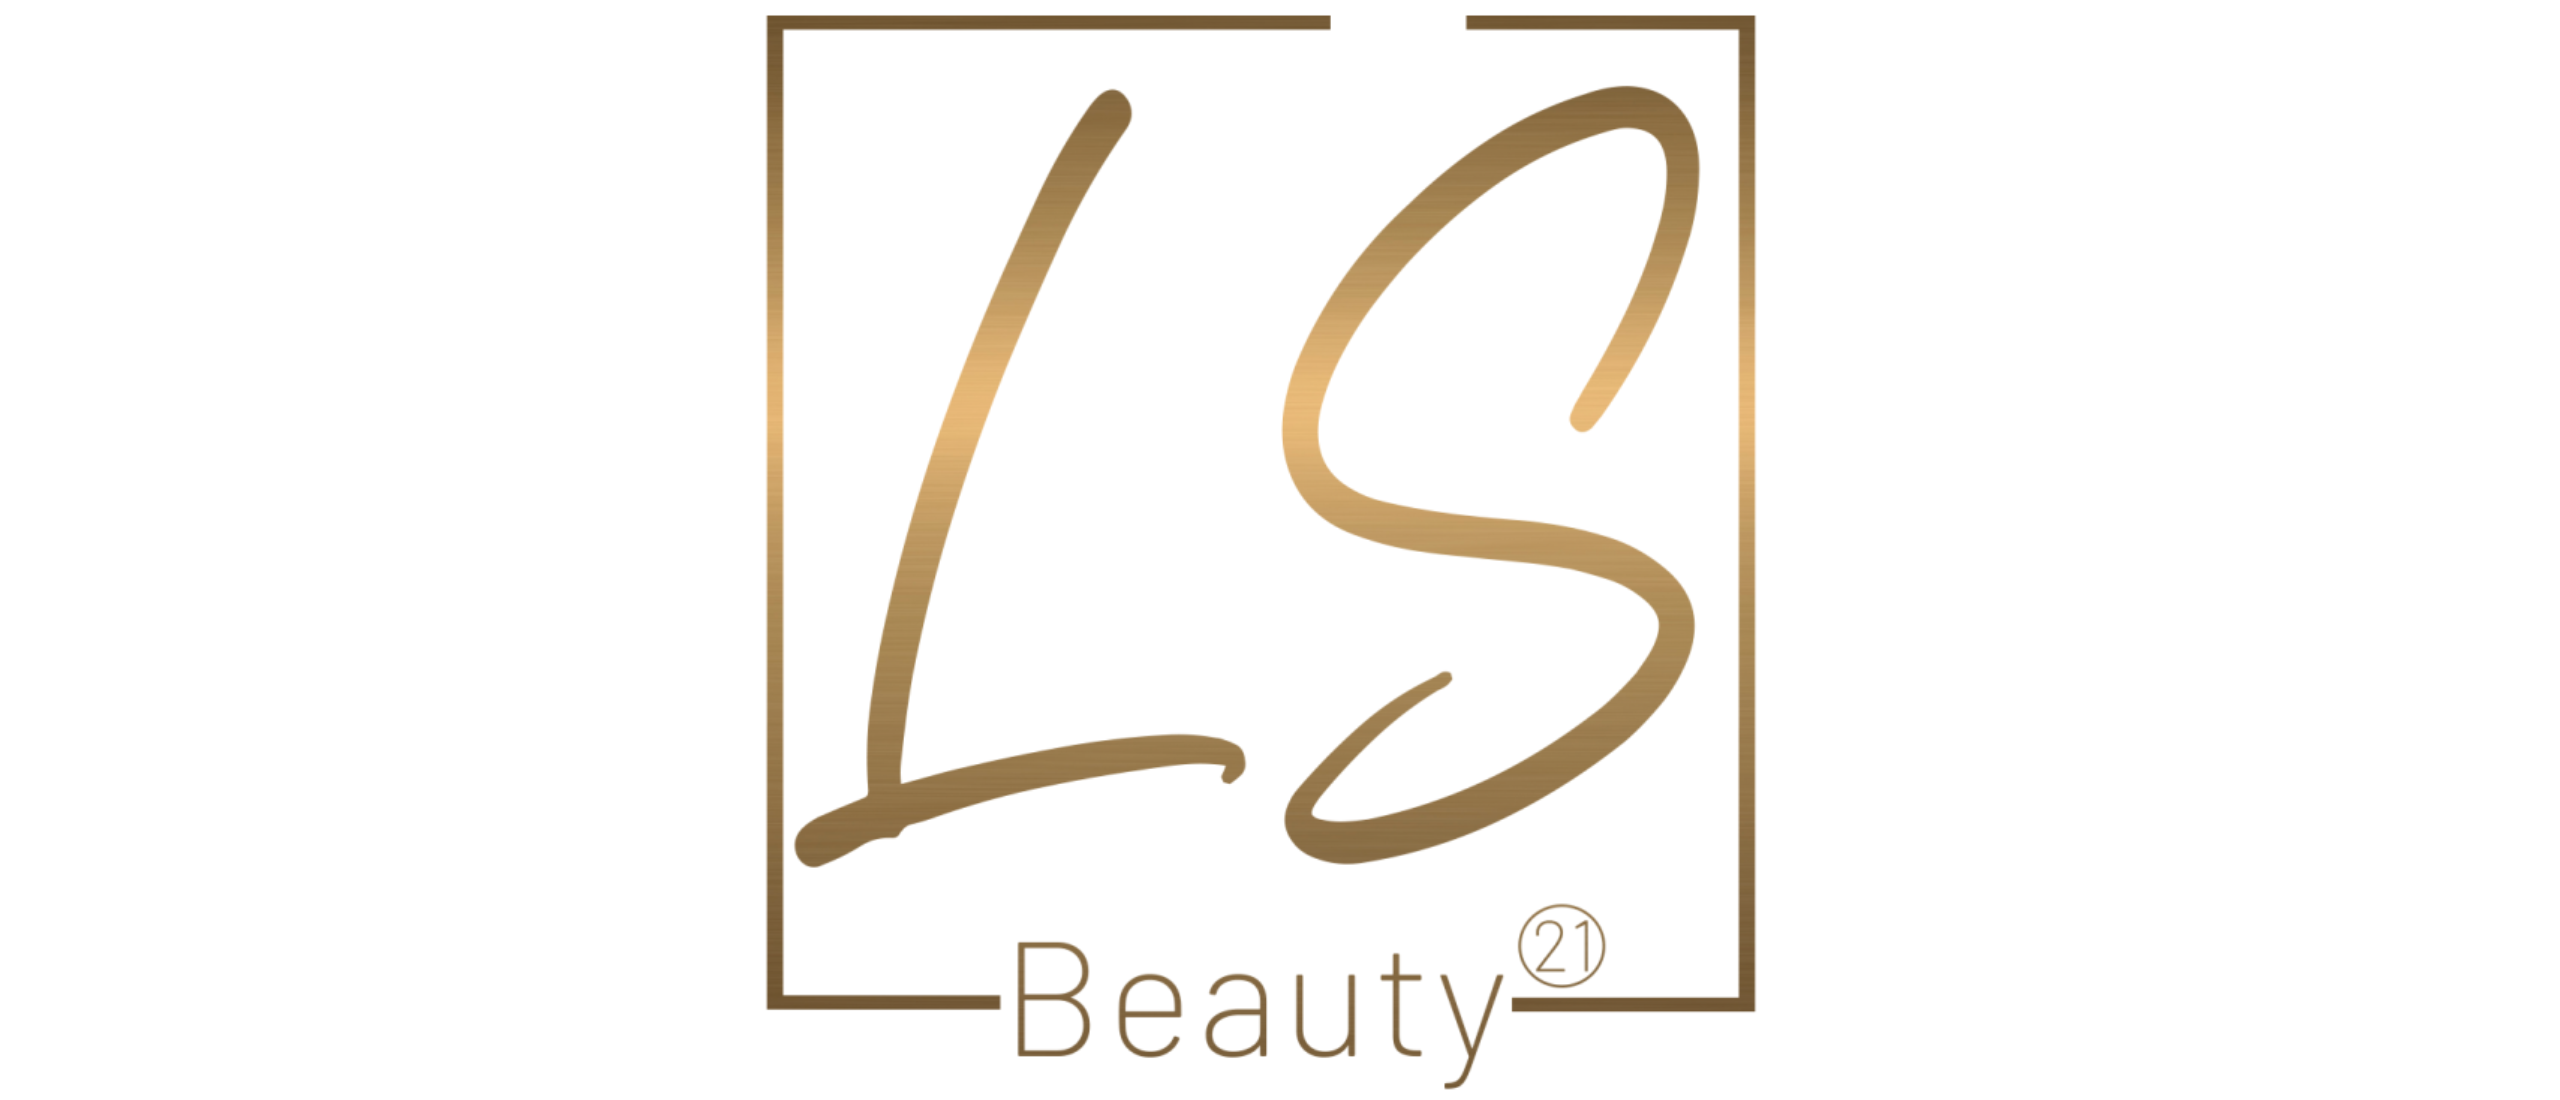 LS Beauty 21: Uw Toonaangevende Schoonheidssalon in Hillegom